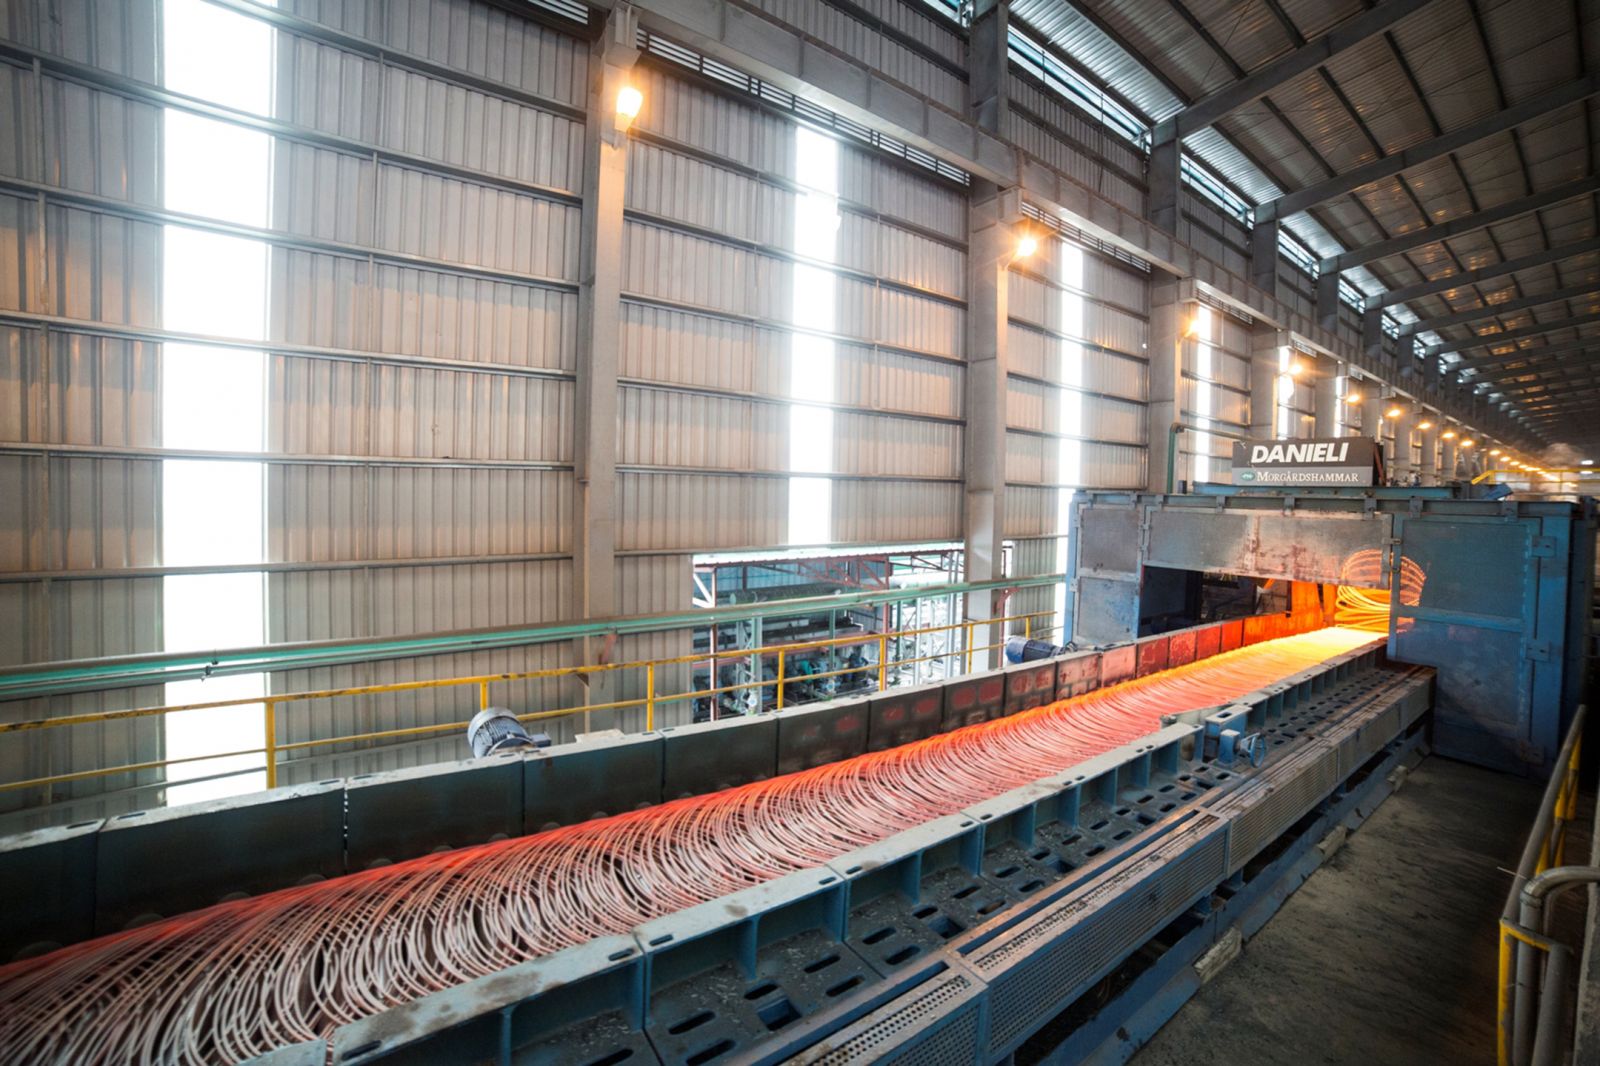 Tháng 7/2019, thép xây dựng Hòa Phát đạt sản lượng hơn 235.000 tấn, trong đó có 26.800 tấn xuất khẩu. 